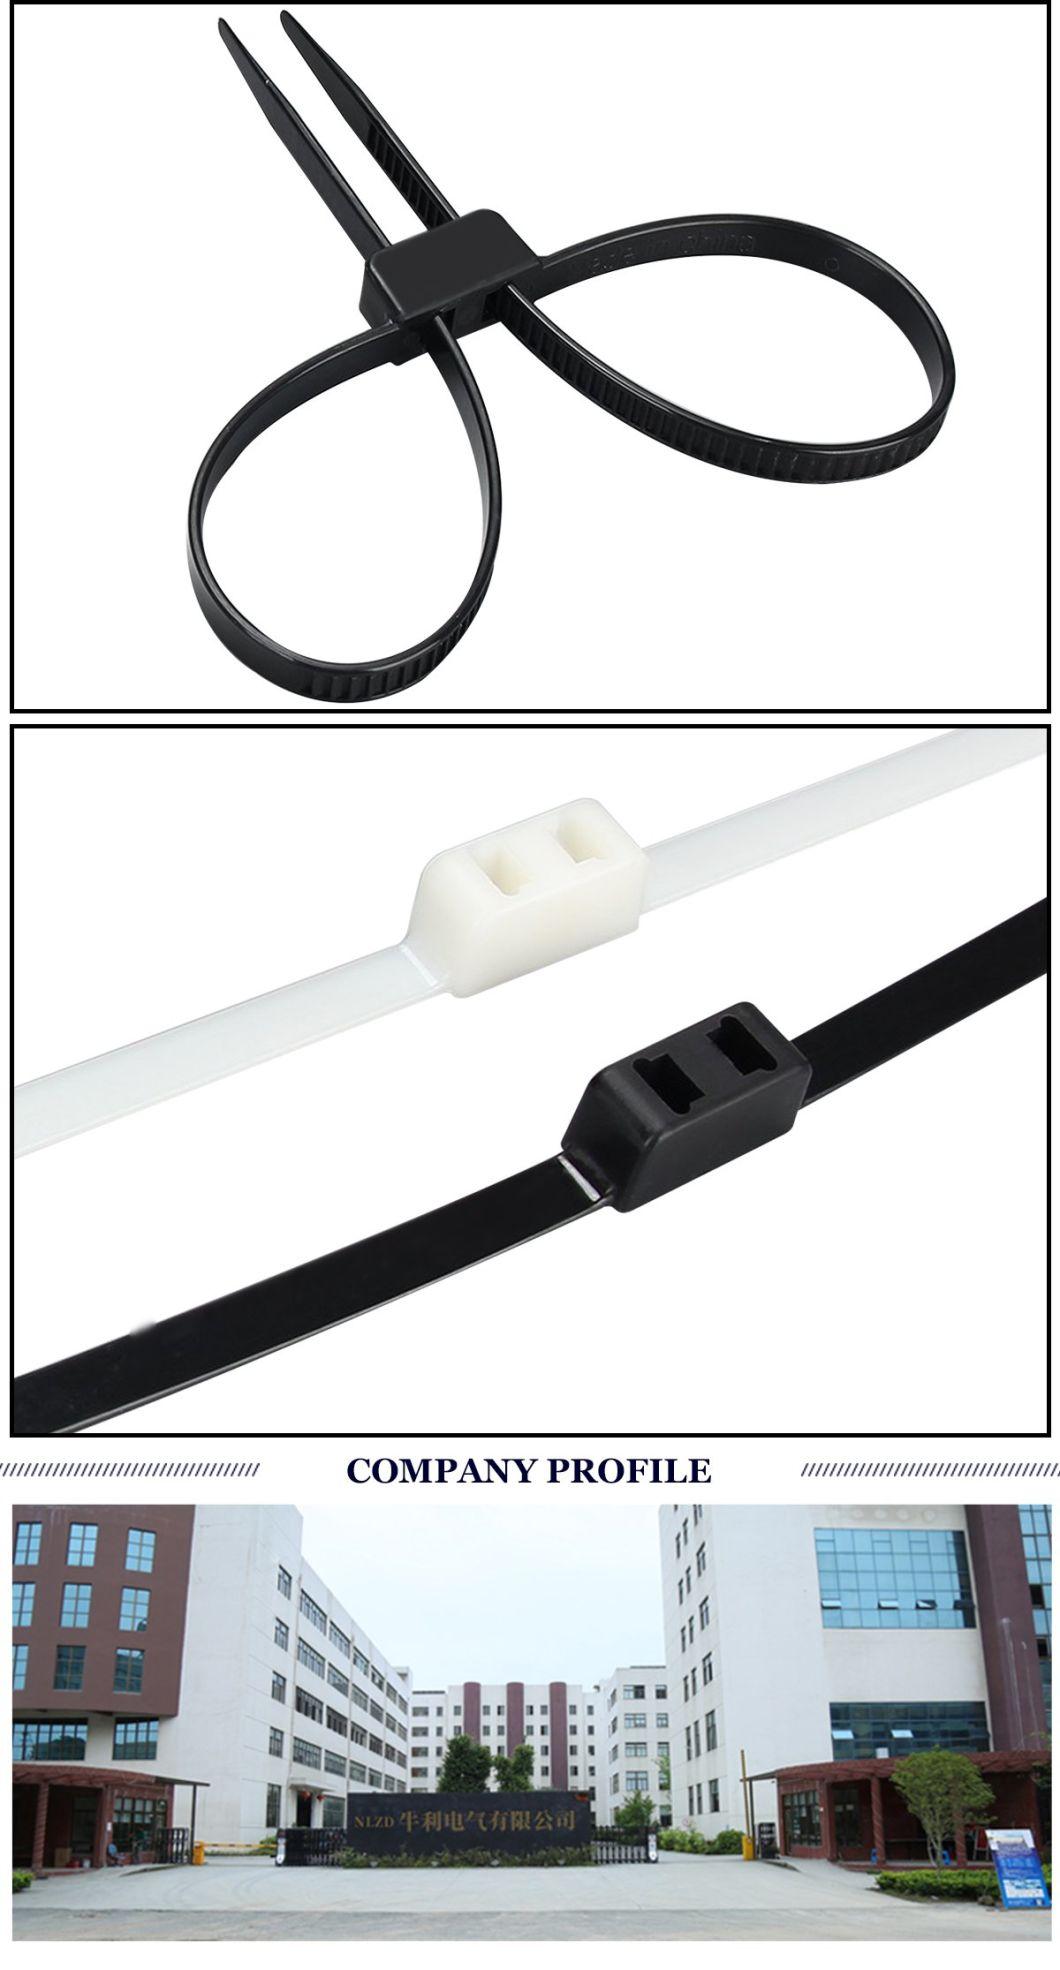 Supplier Plastic Handcuffs Heavy Duty Nylon Cable Tie